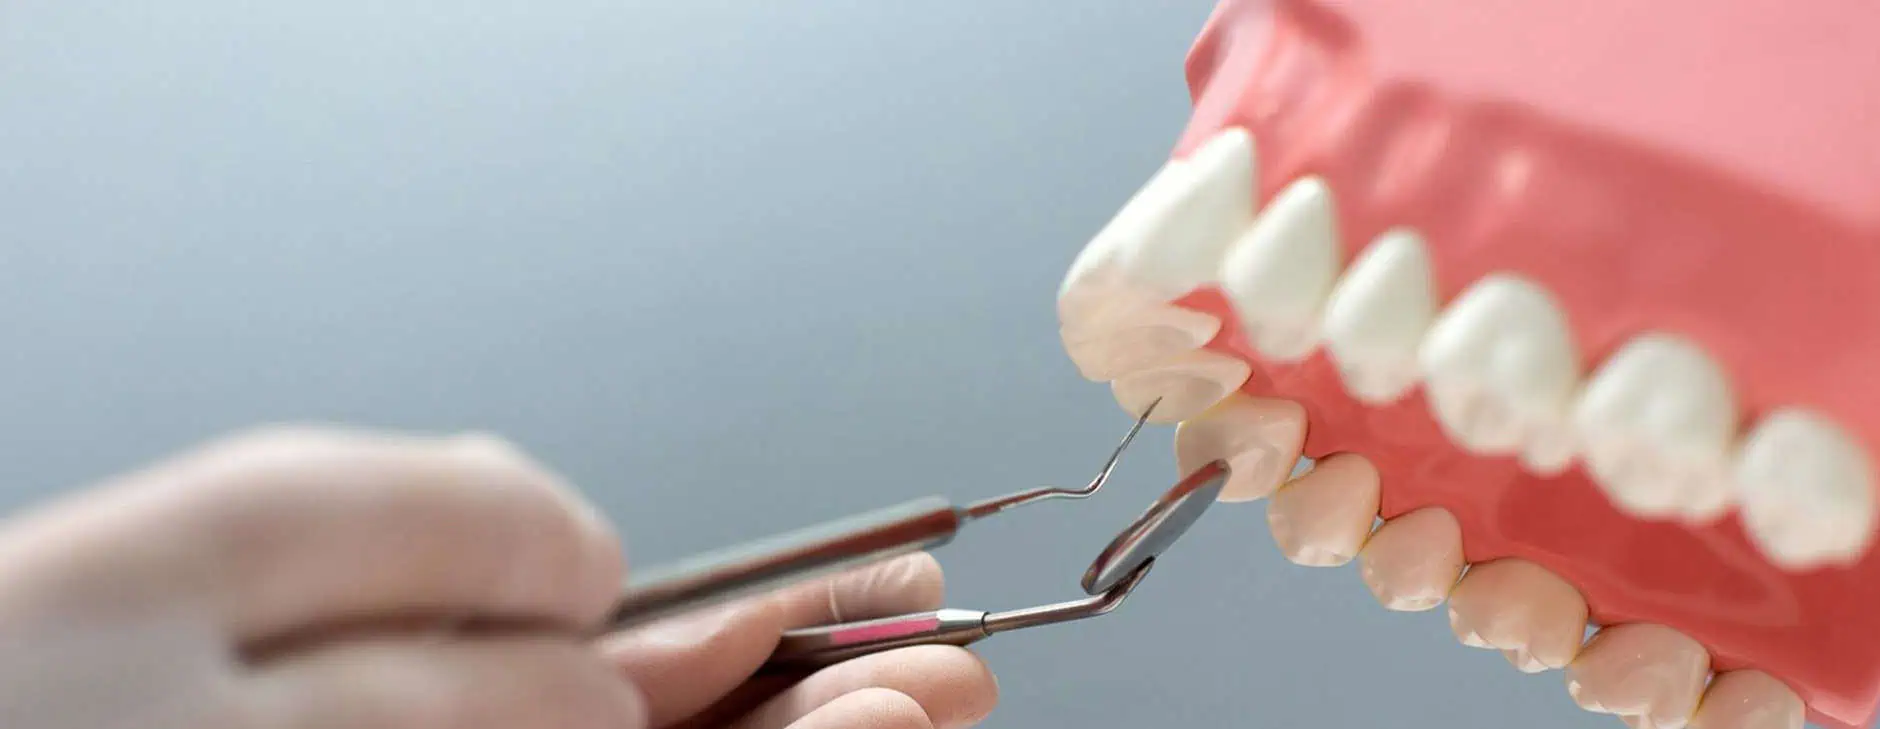 Dental procedures